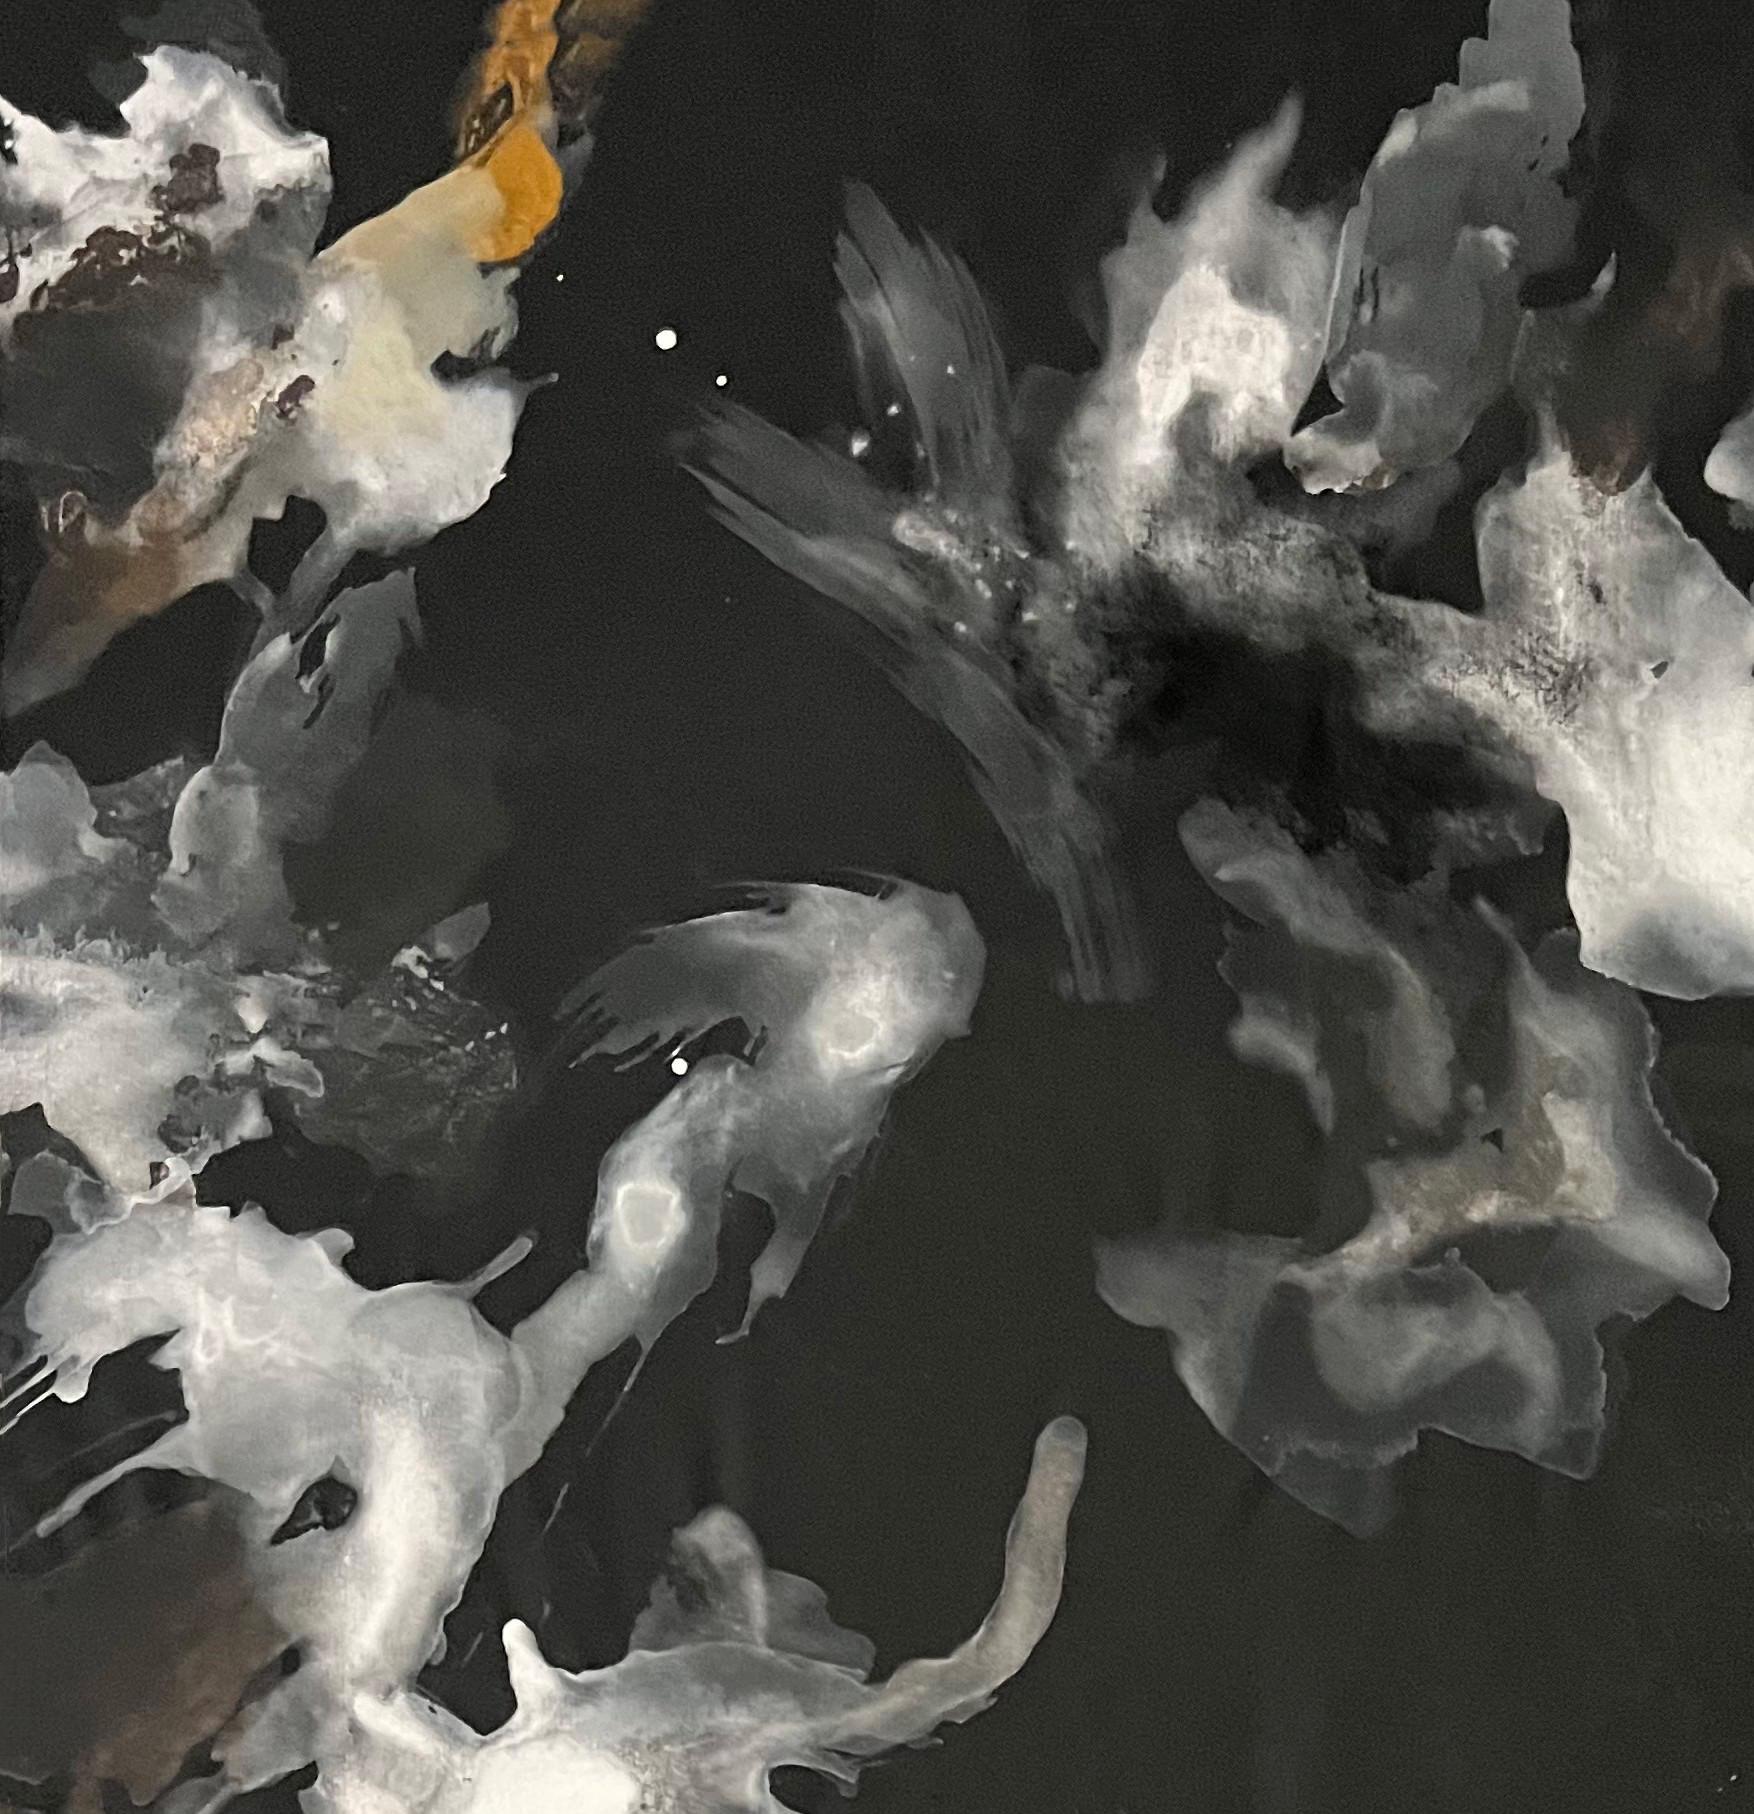 Série Whiting n3, 2023 par Rosario Briones
De la série Whiting 
Technique mixte : pigments naturels, encre de Chine, aquarelle sur toile.
Dimensions : 160 H x 100 L cm.
Non encadré
Signé par l'artiste.

Dans cette série, l'artiste représente la